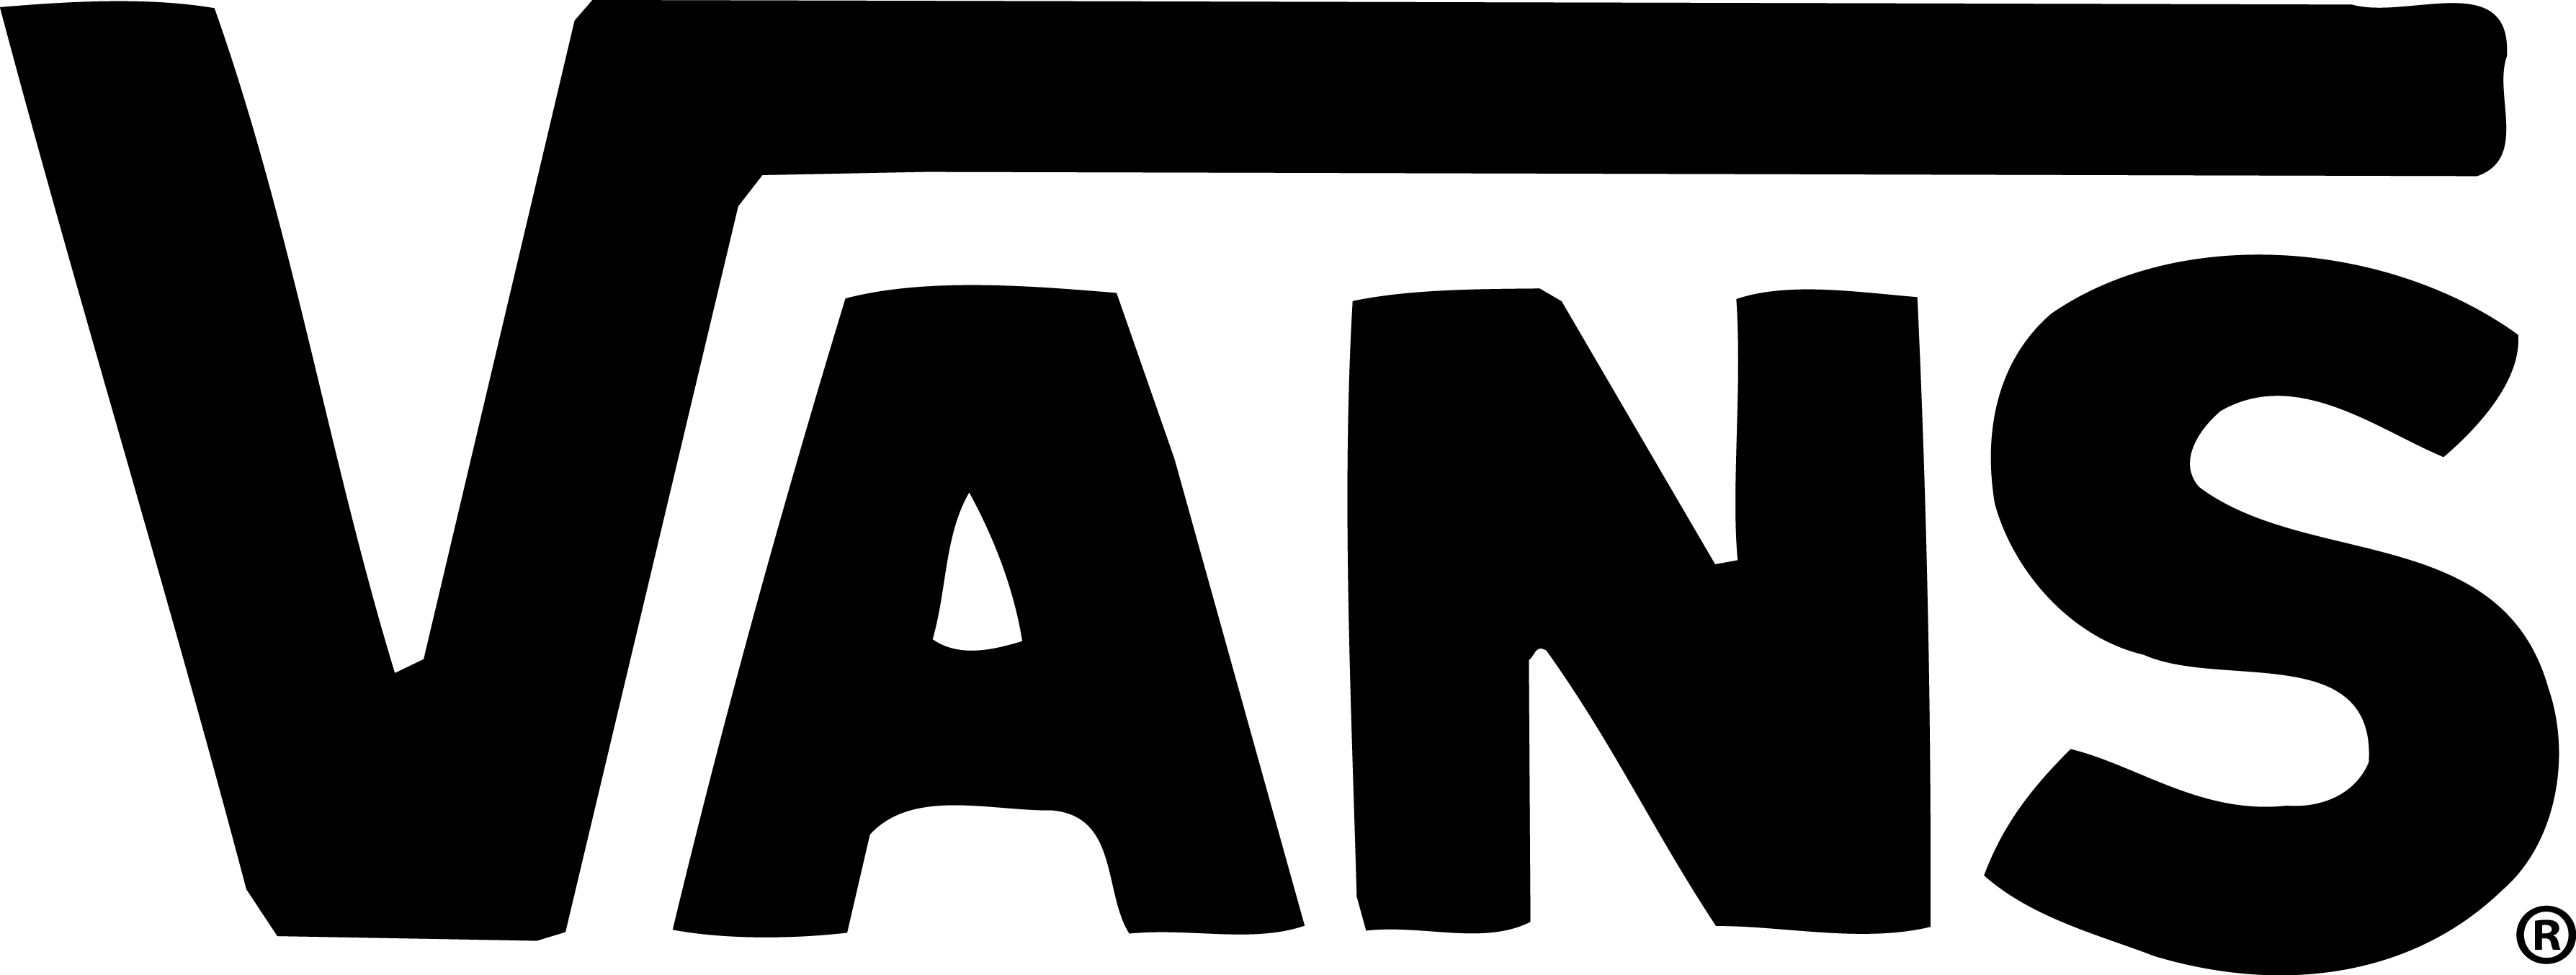 Vans Logo - PNG Logo Vector Downloads (SVG, EPS)